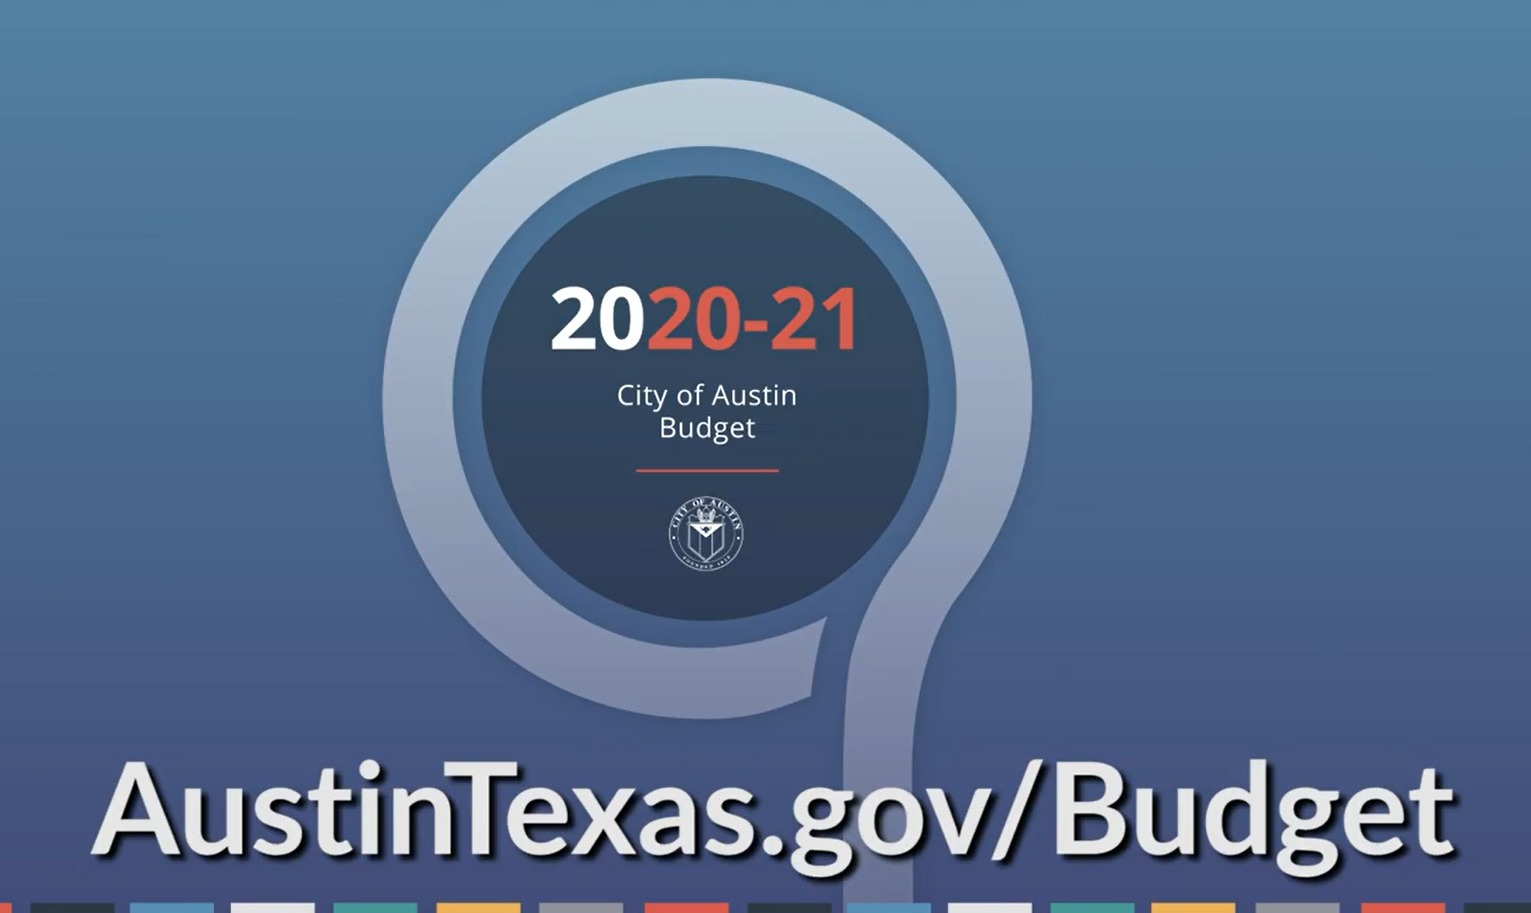 Image of Budget logo including AustinTexas.gov/Budget link